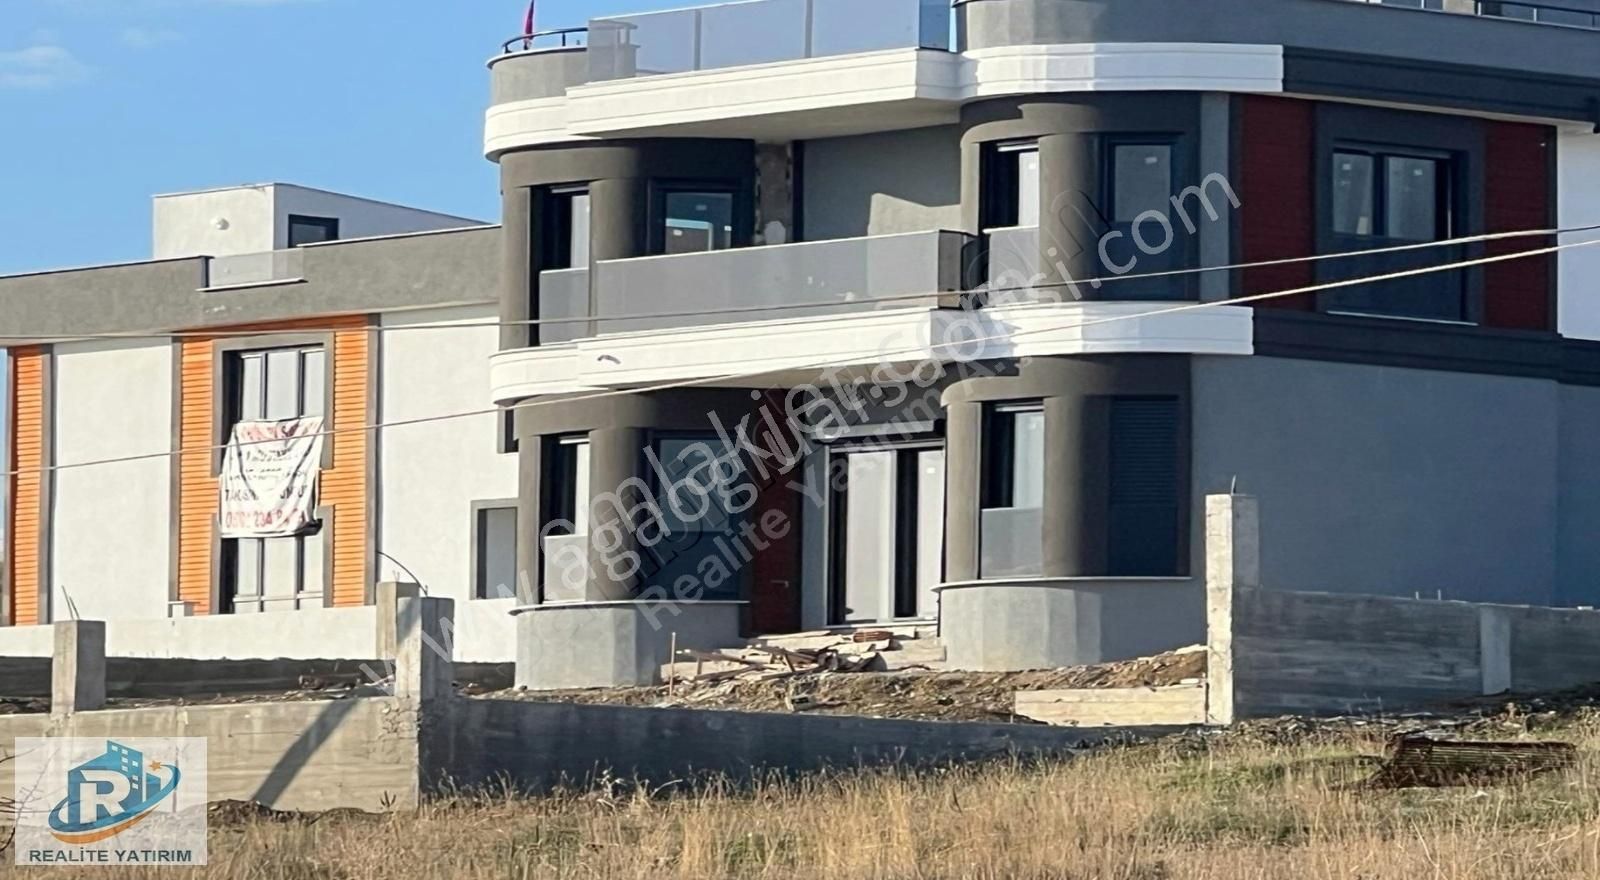 Şarköy İstiklal Satılık Villa İmarlı Tekirdağ Şarköy'de Satılık Deniz Manzaralı İmarlı Arsa 290 m2